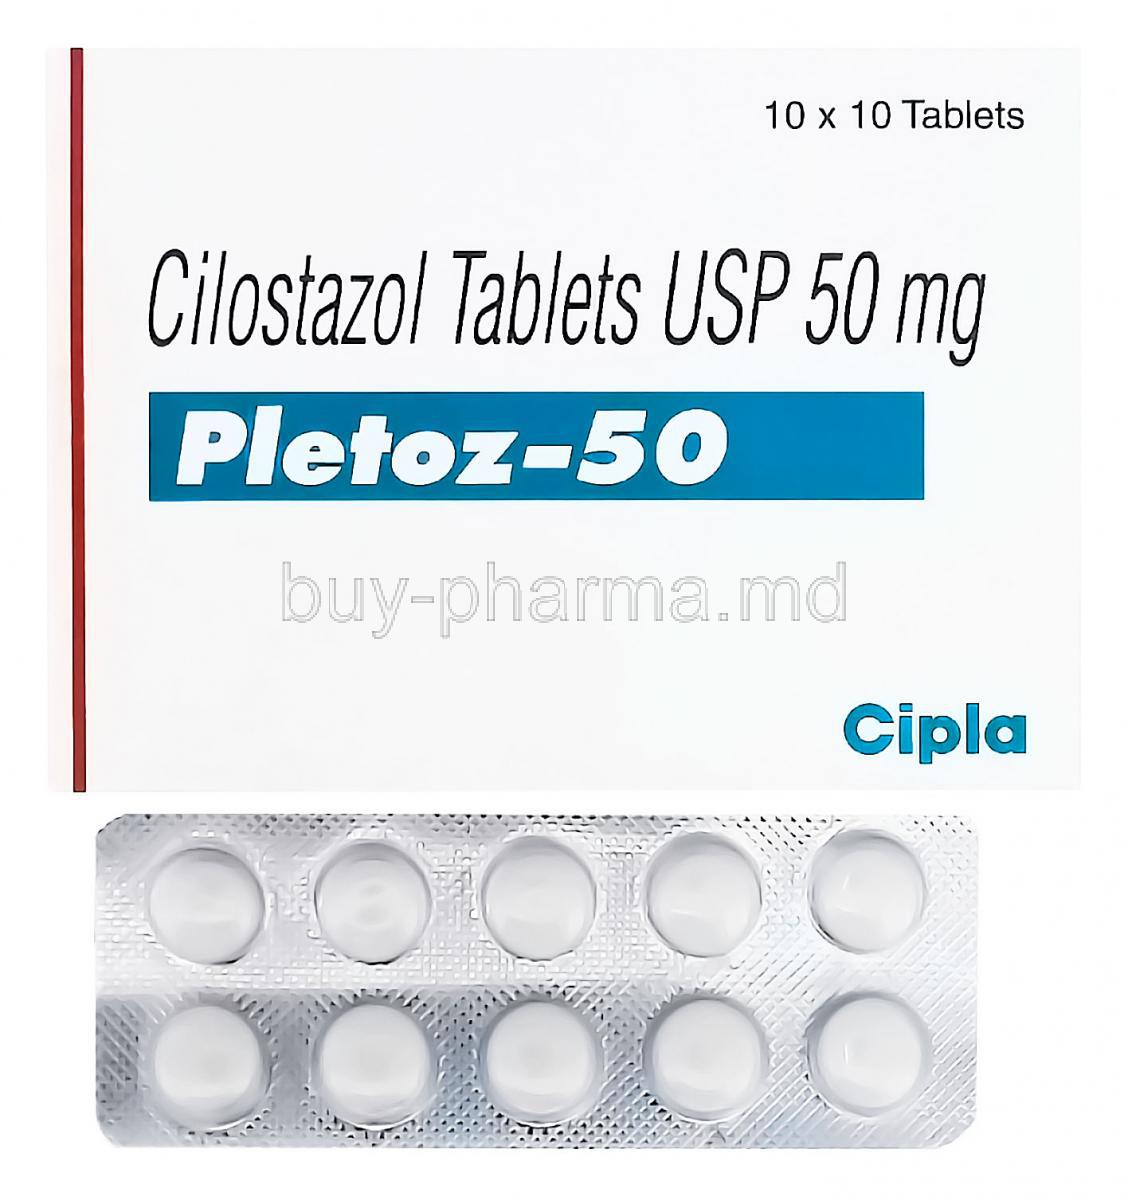 Pletoz-50, Generic Pletal, Cilostazol 50mg